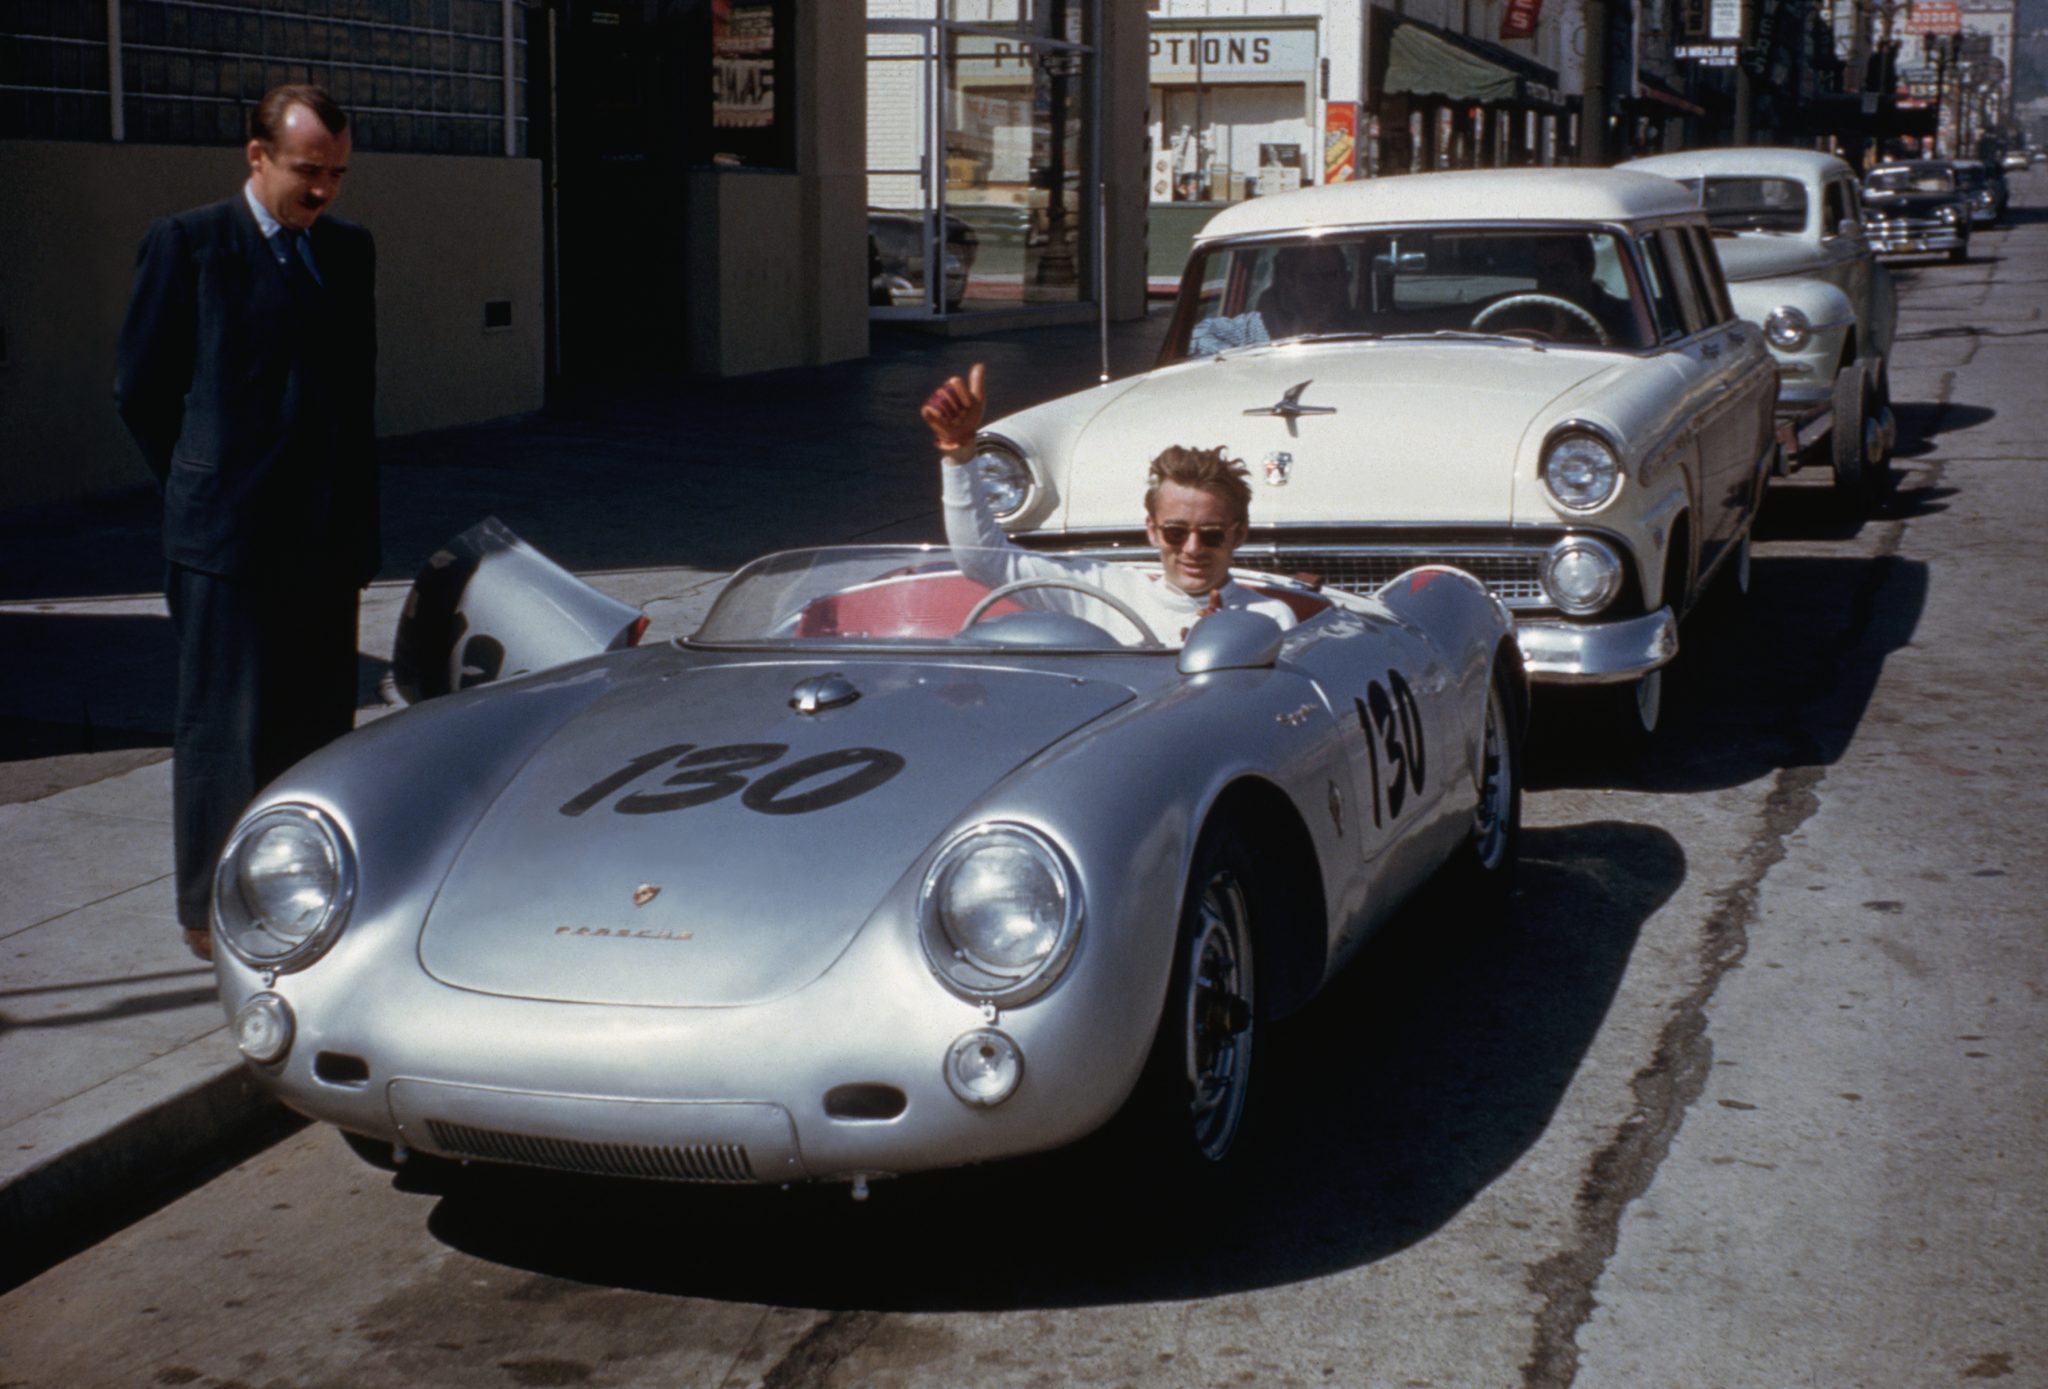 James Dean Porsche is a famous missing car